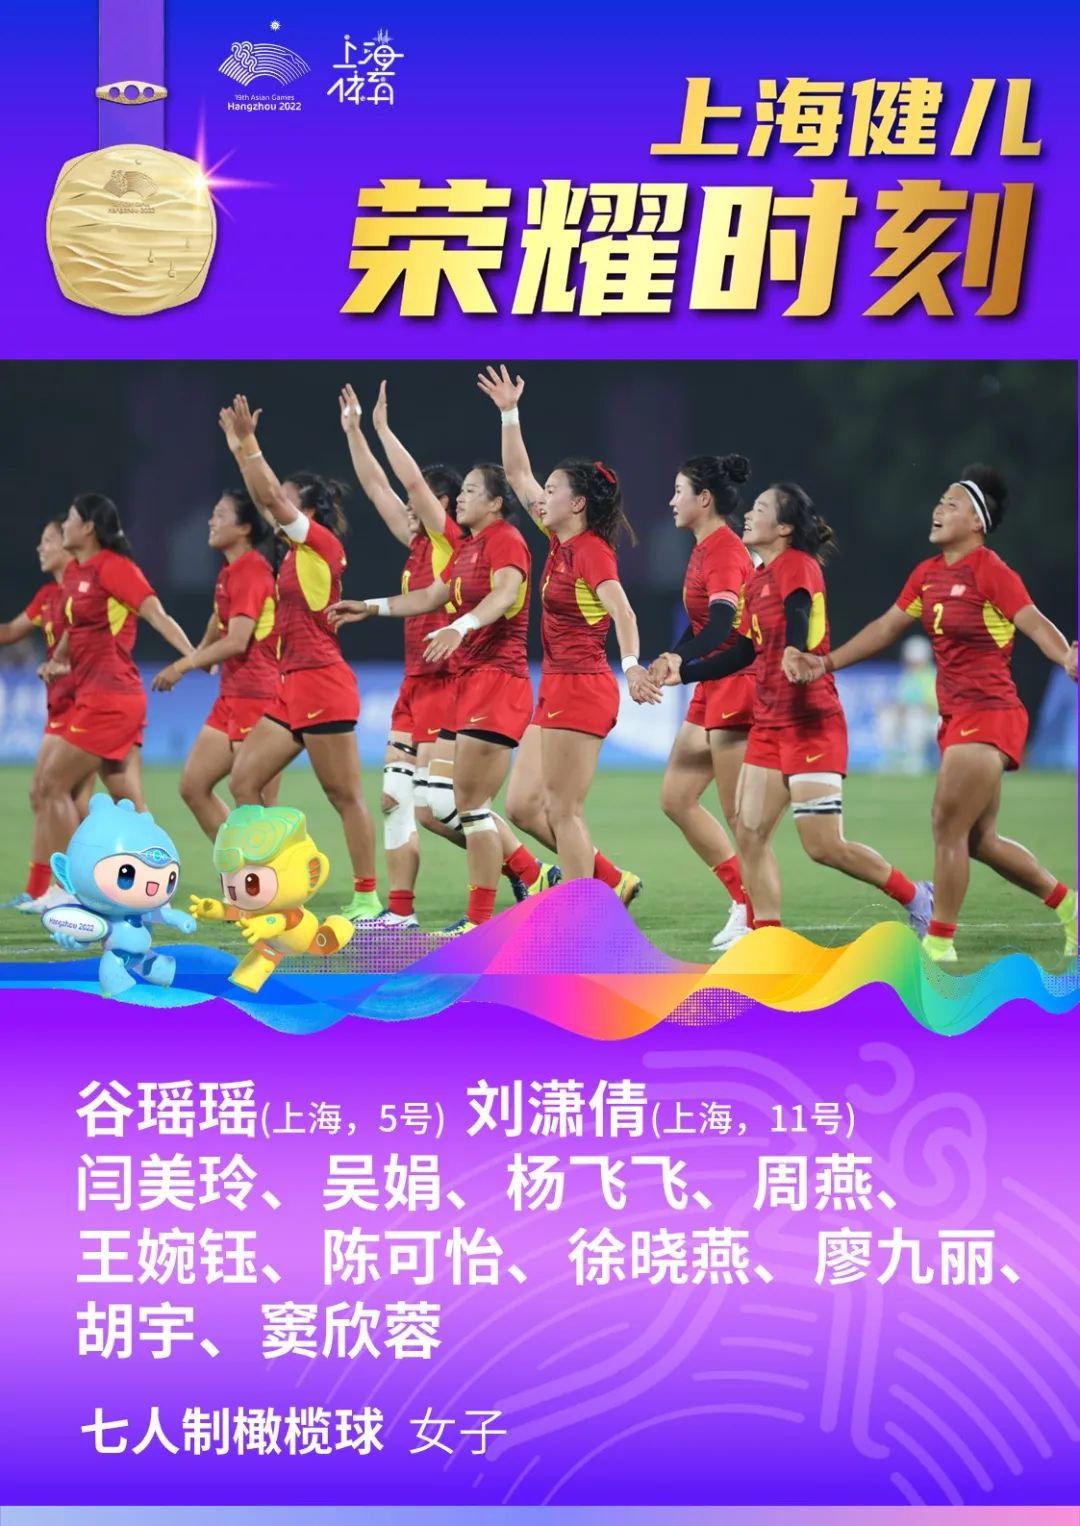 赢了！谷瑶瑶、刘潇倩与队友携手夺得女子七人制橄榄球冠军